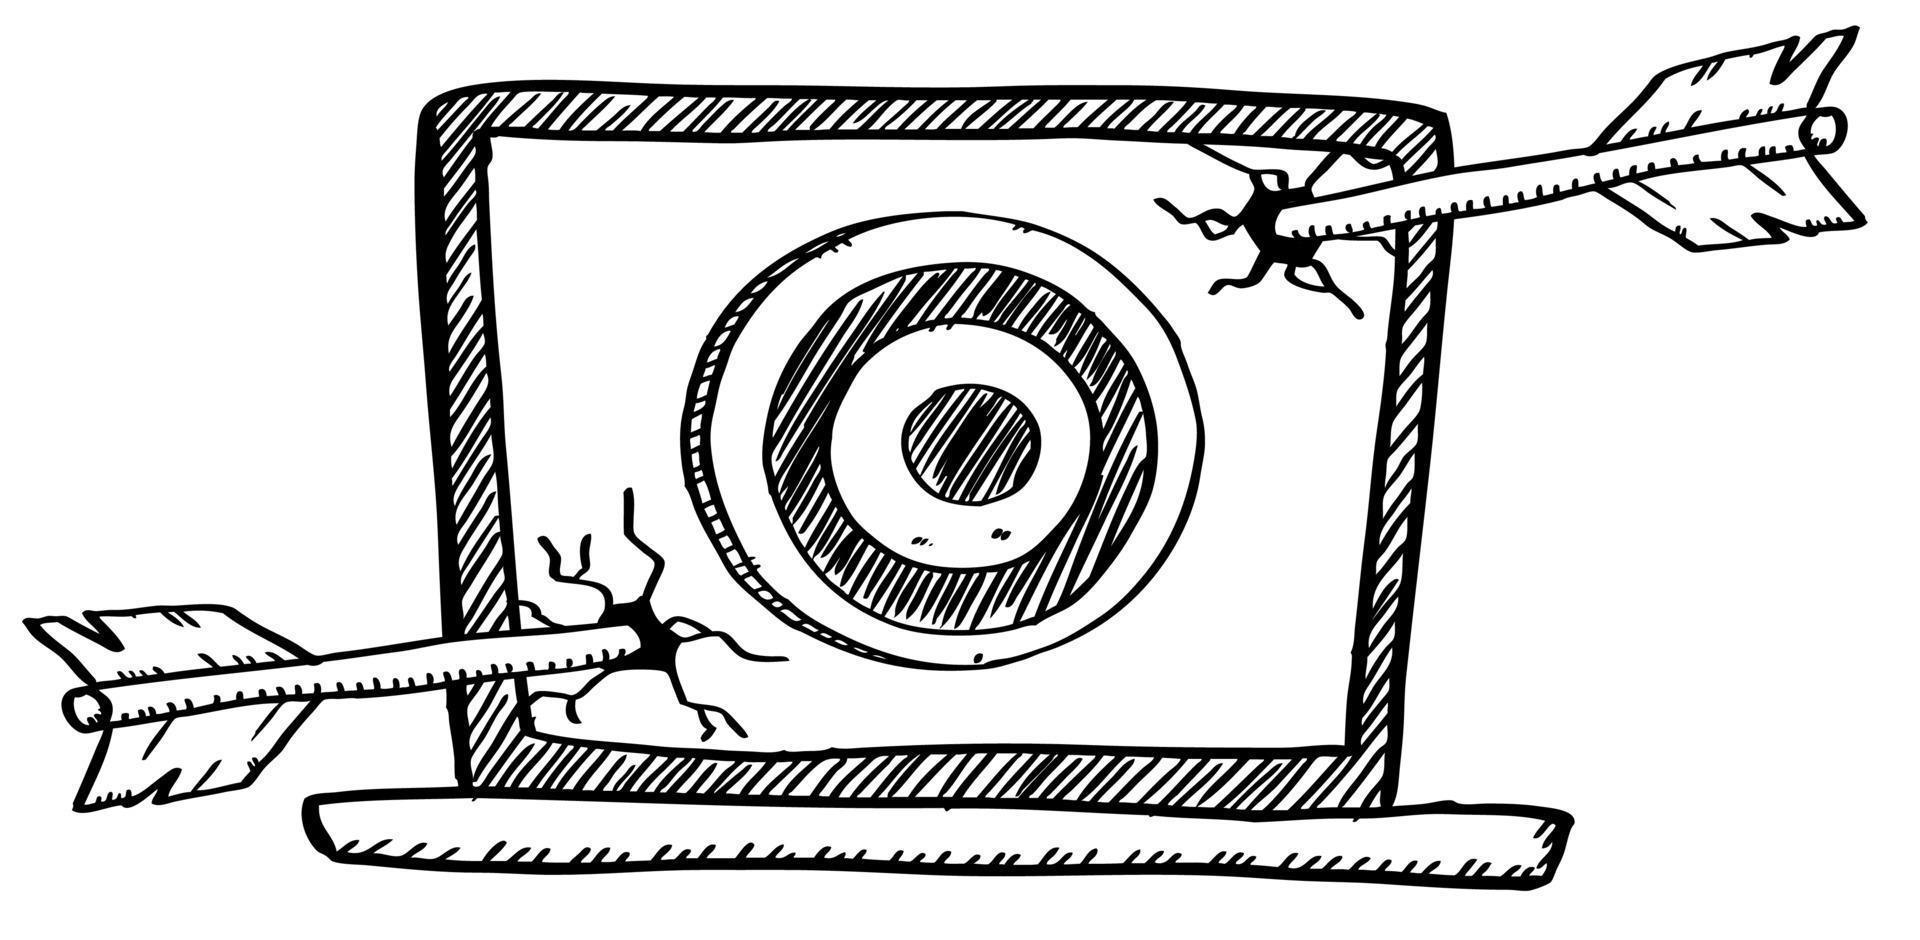 illustrazione in stile cartone animato di frecce di tiro con l'arco che hanno mancato il bersaglio e hanno colpito lo schermo del laptop. illustrazione vettoriale di doodle disegnato a mano.